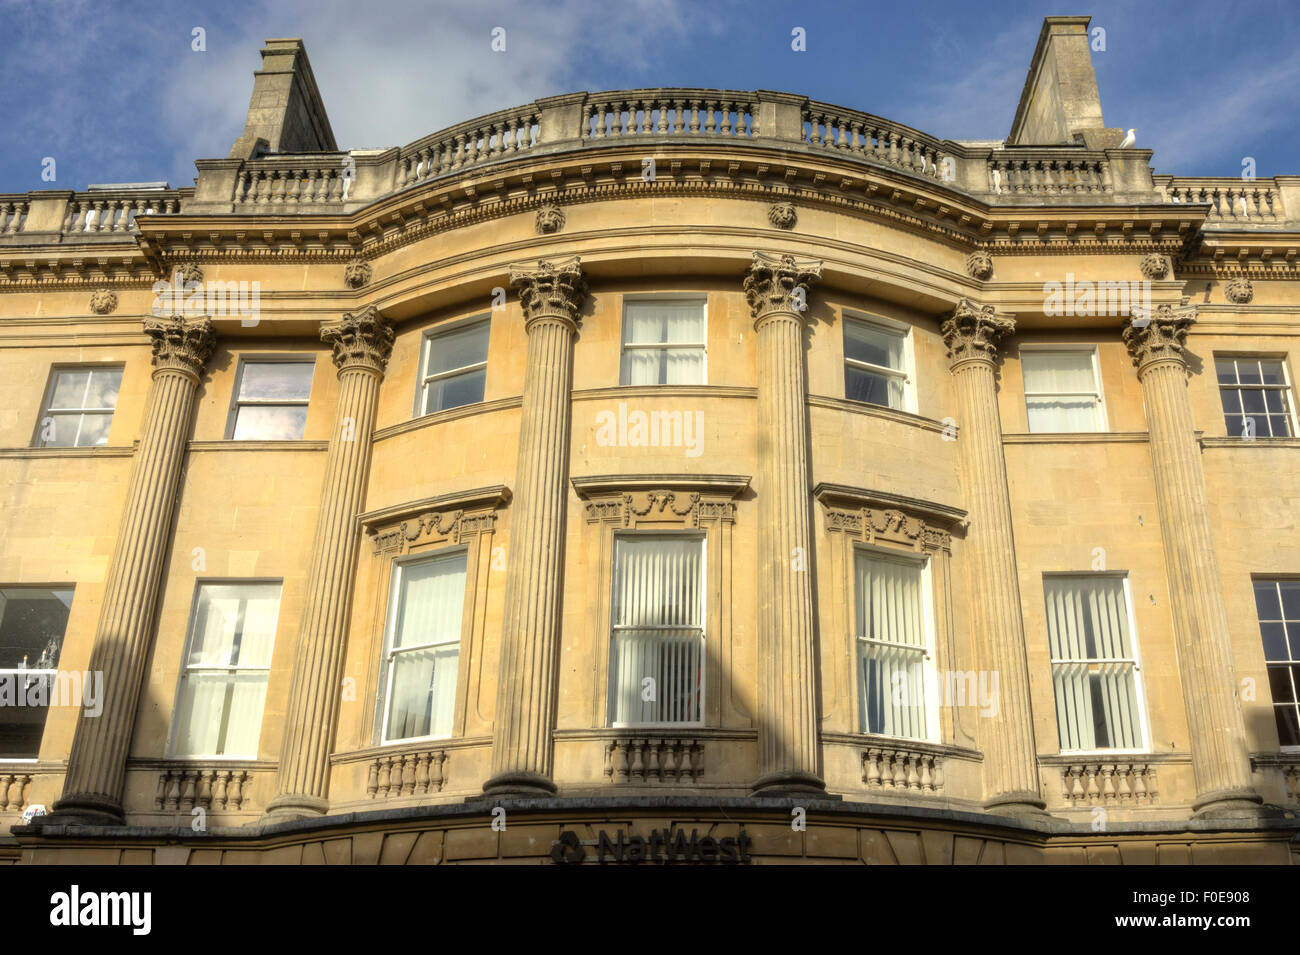 Stadt Bath, England Architektur Bad Spalten. Klassischen Säulen. Stockfoto